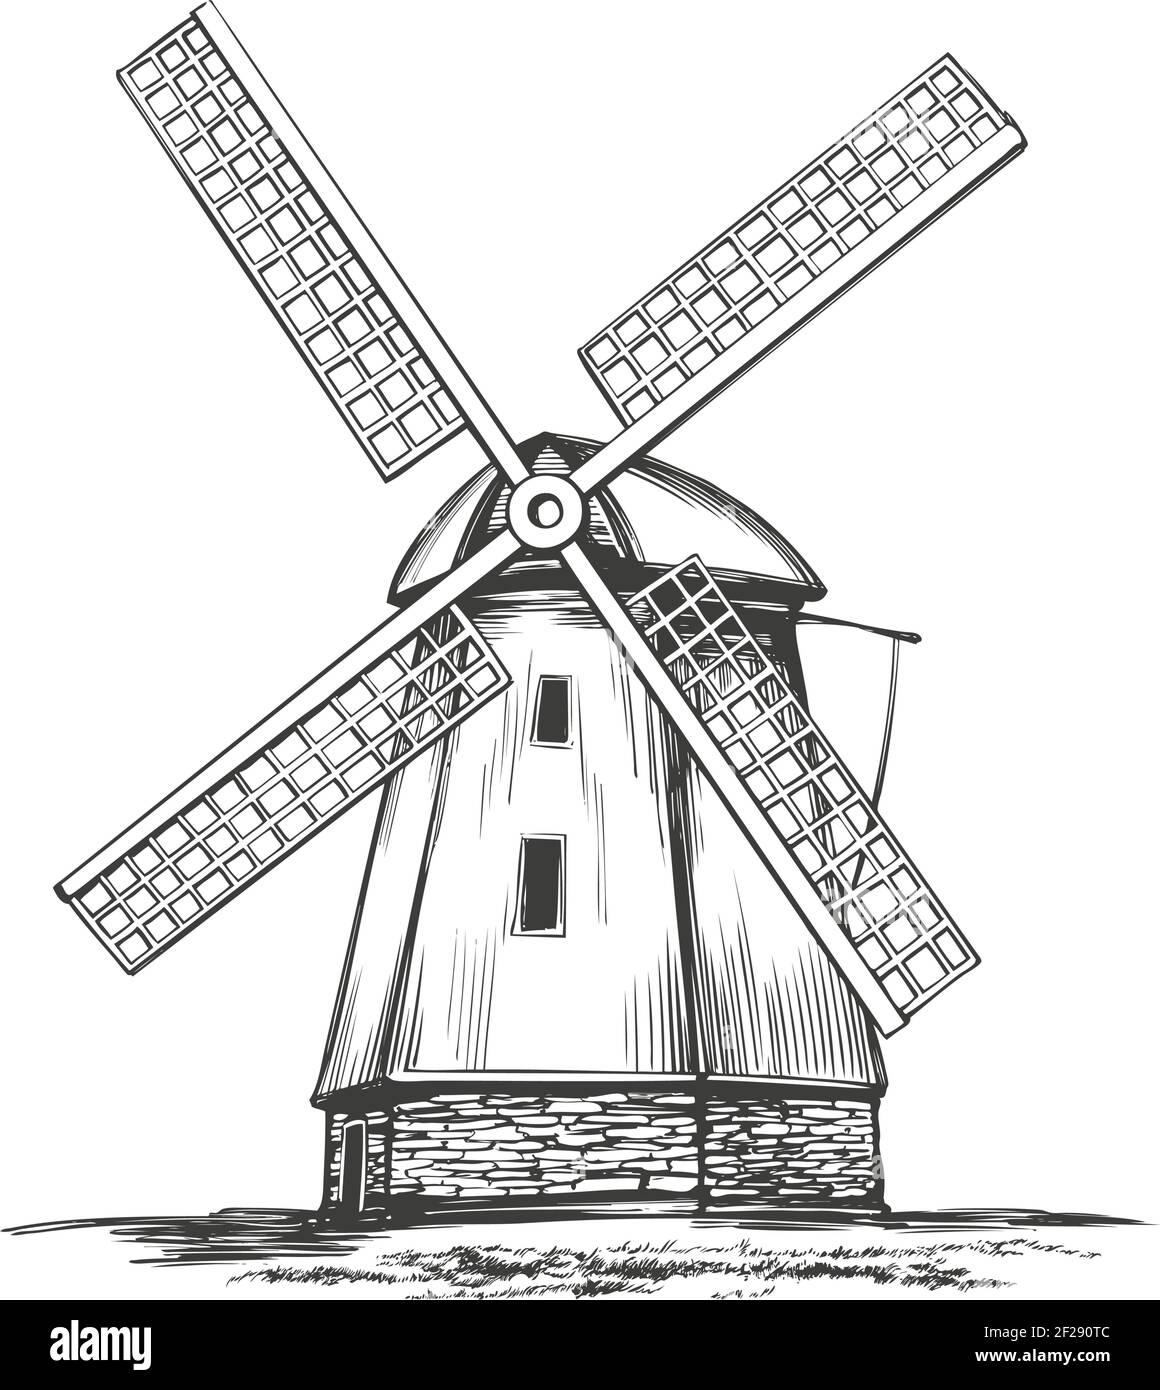 Alte Windmühle, architektonisches Vintage-Gebäude handgezeichnete Vektor-Illustration realistische Skizze. Stock Vektor